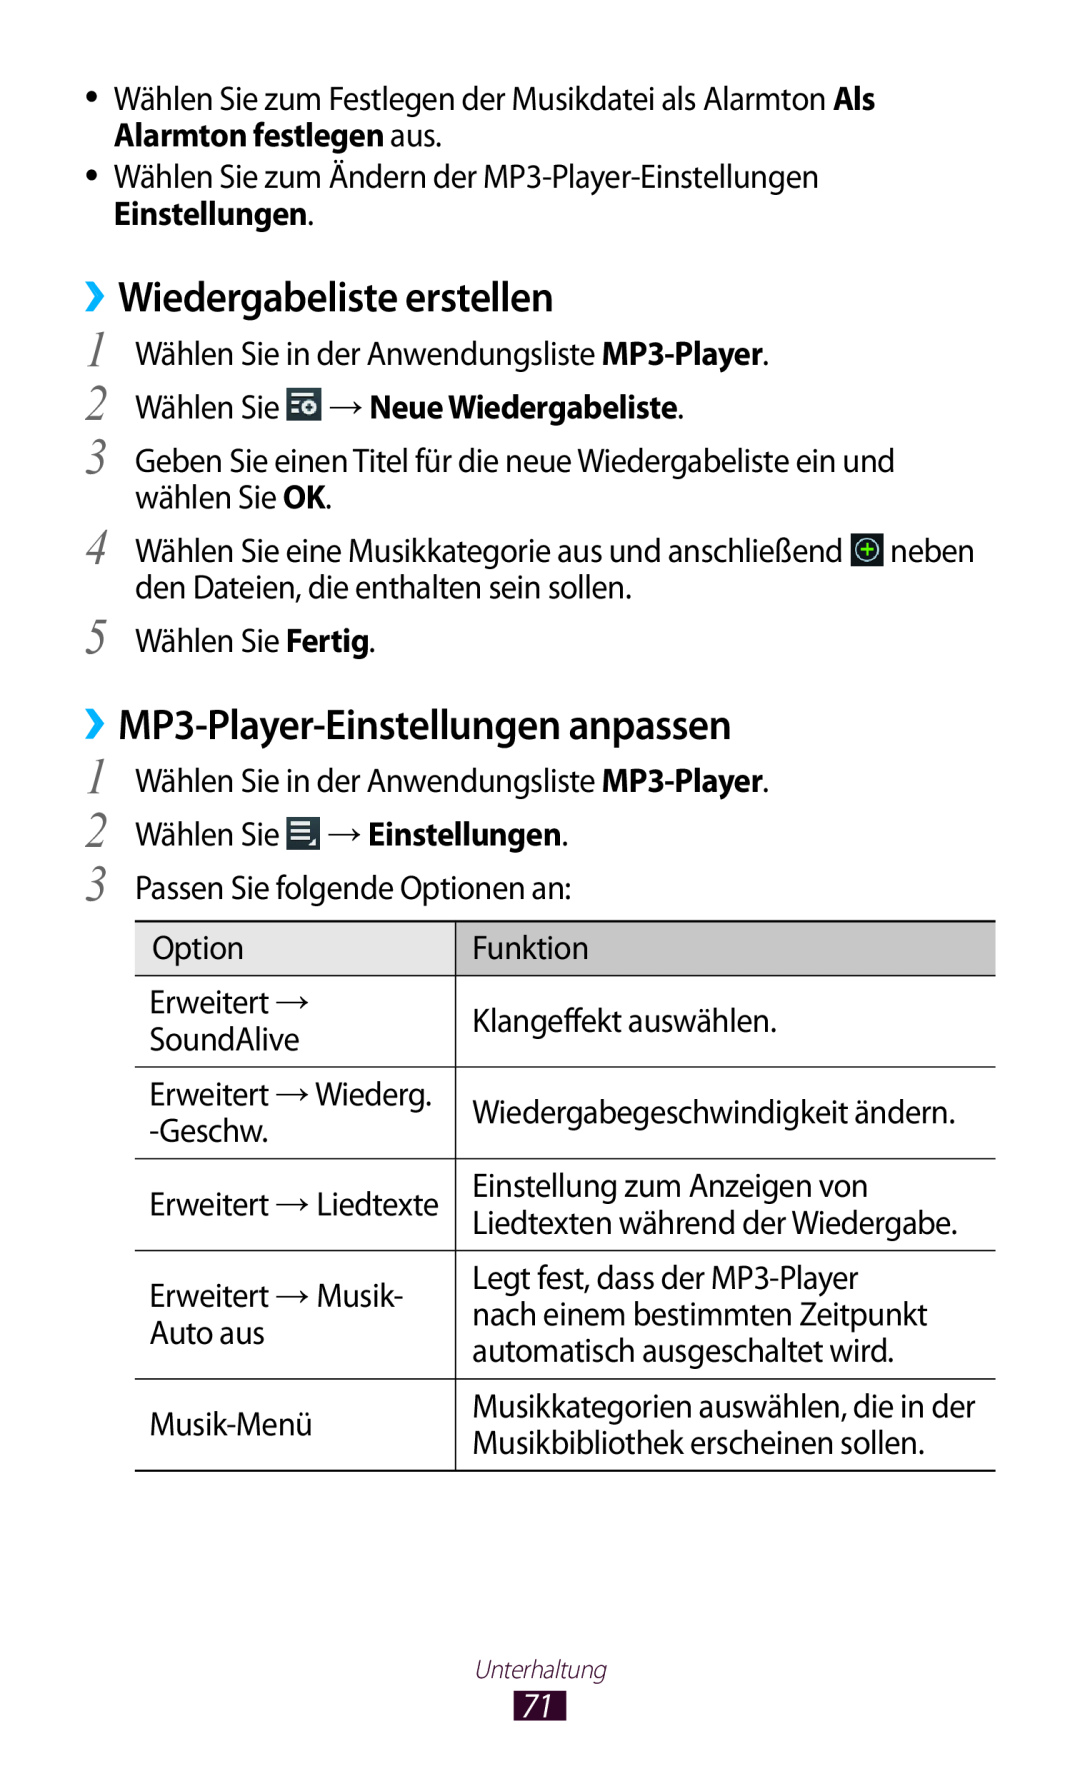 Samsung GT-P7511FKEDBT Wiedergabeliste erstellen, ››MP3-Player-Einstellungen anpassen, Wählen Sie → Neue Wiedergabeliste 